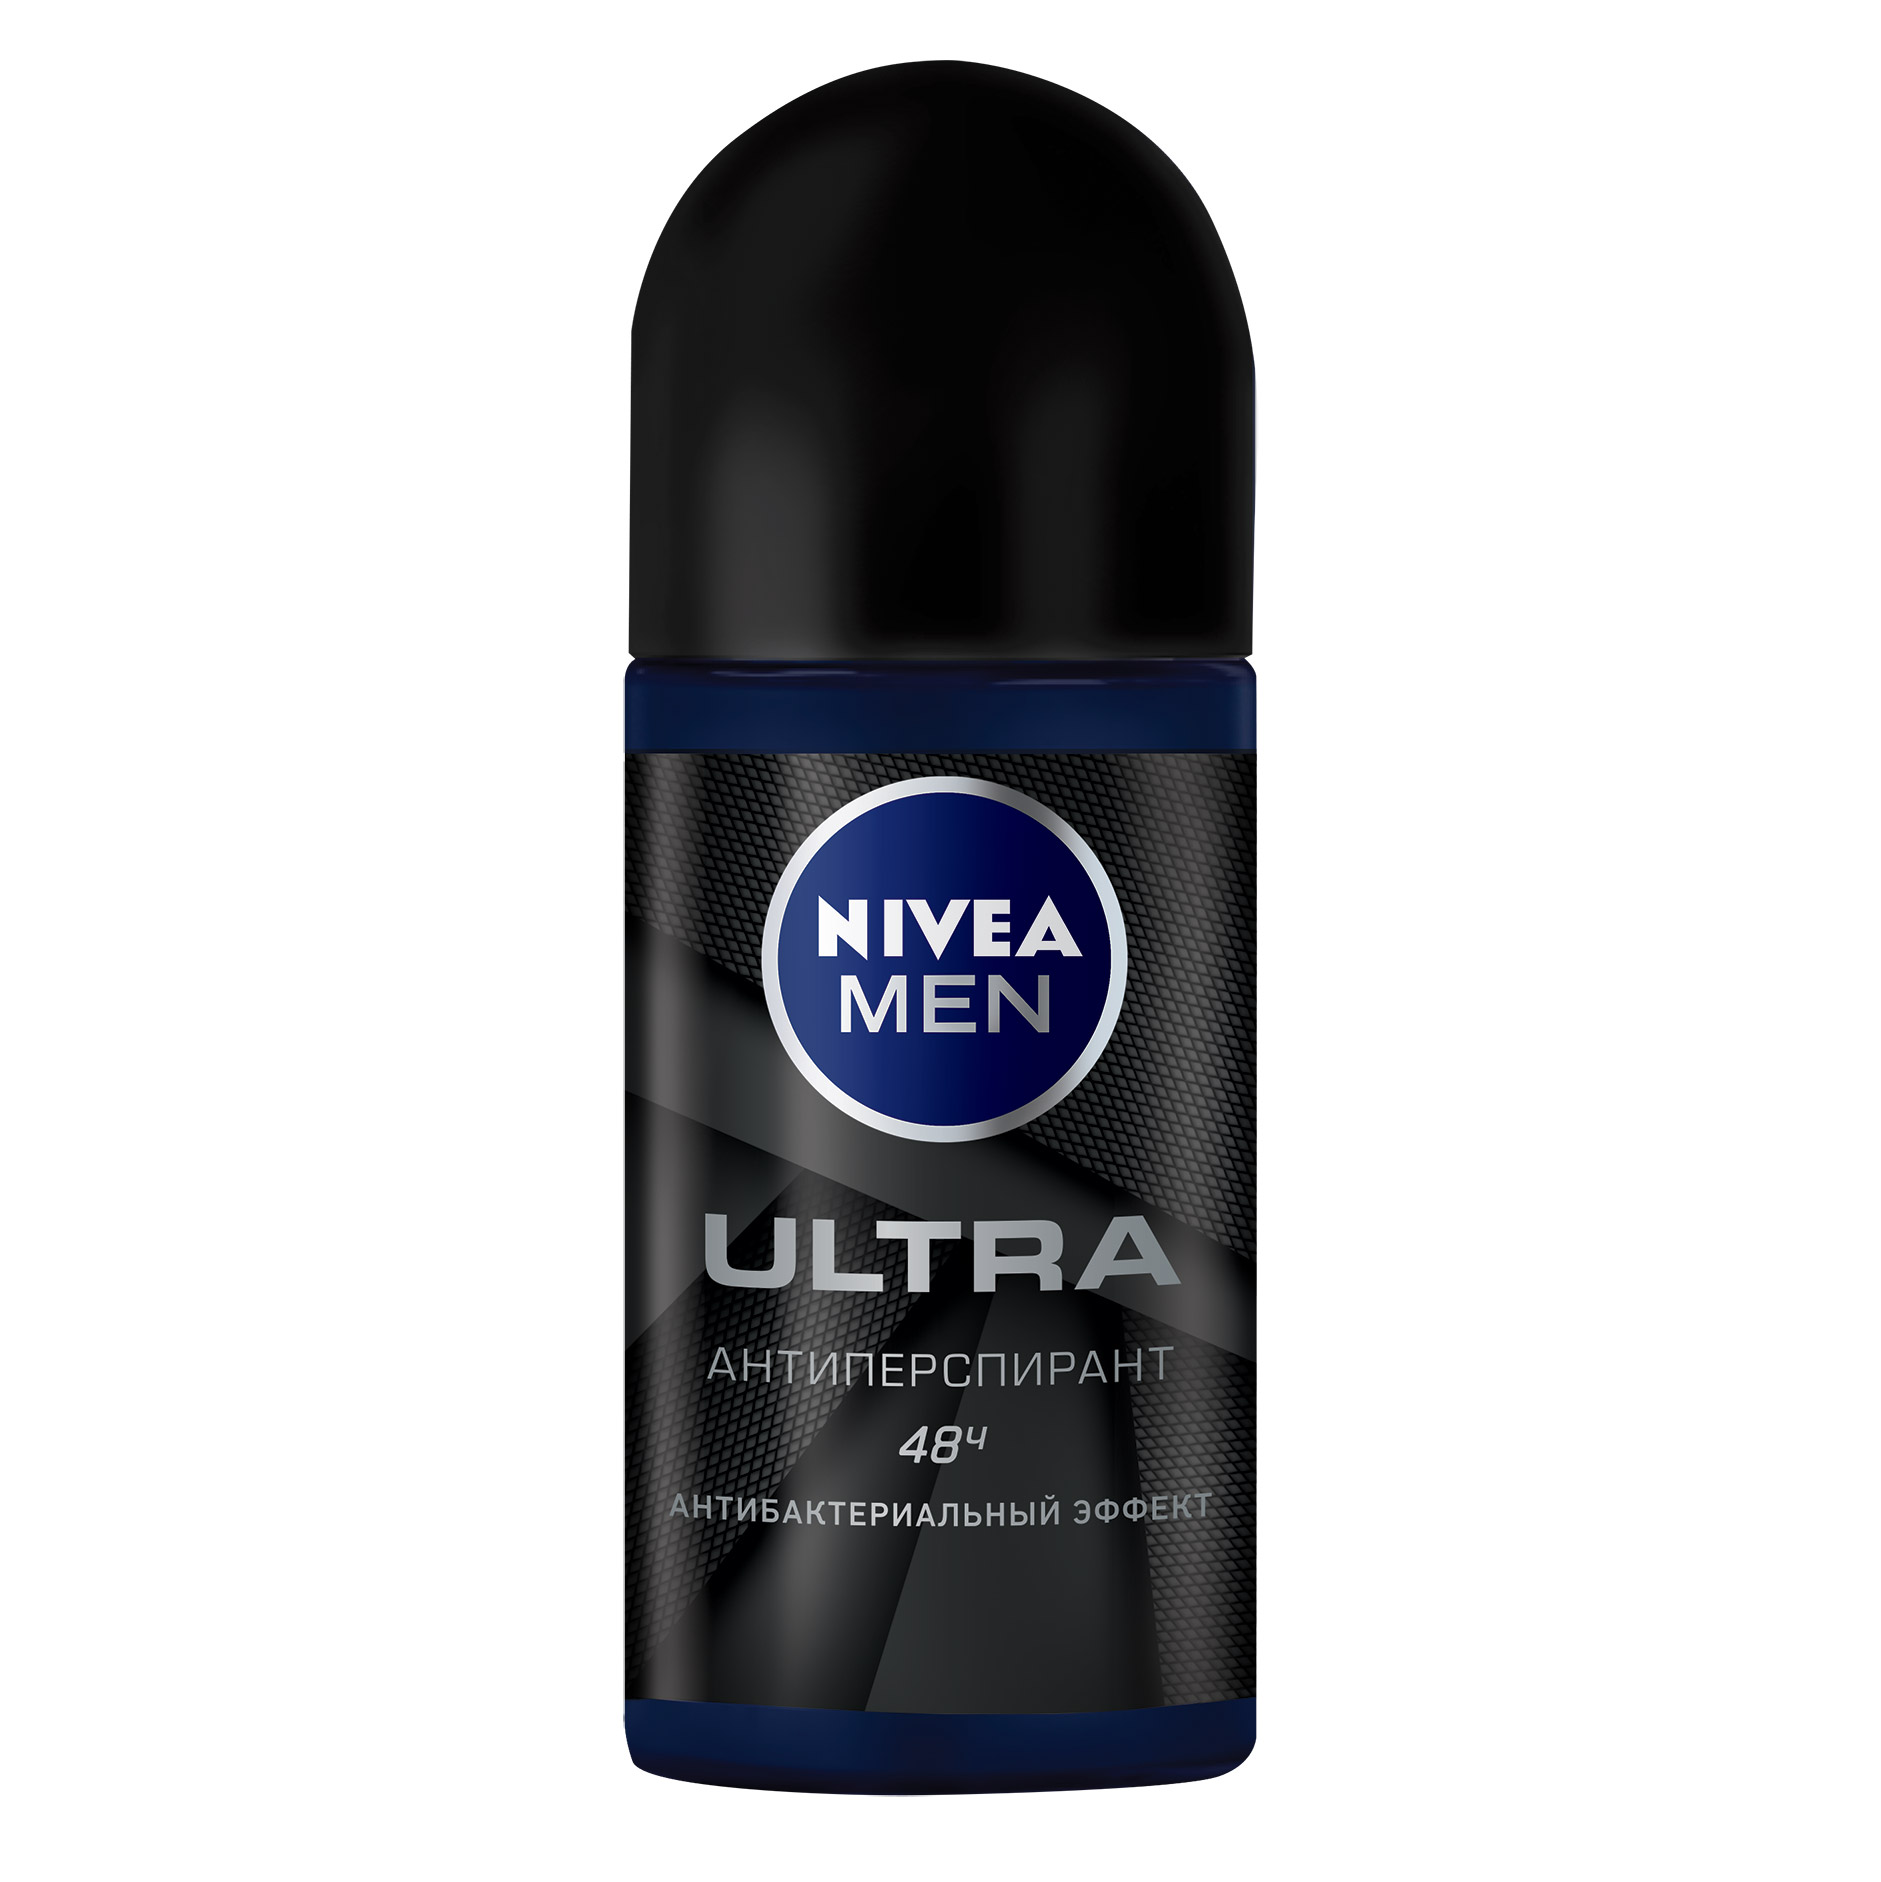 Дезодорант шарик Nivea ULTRA мужской 50 мл дезодорант спрей nivea men ultra антибактериальный эффект мужской 150 мл